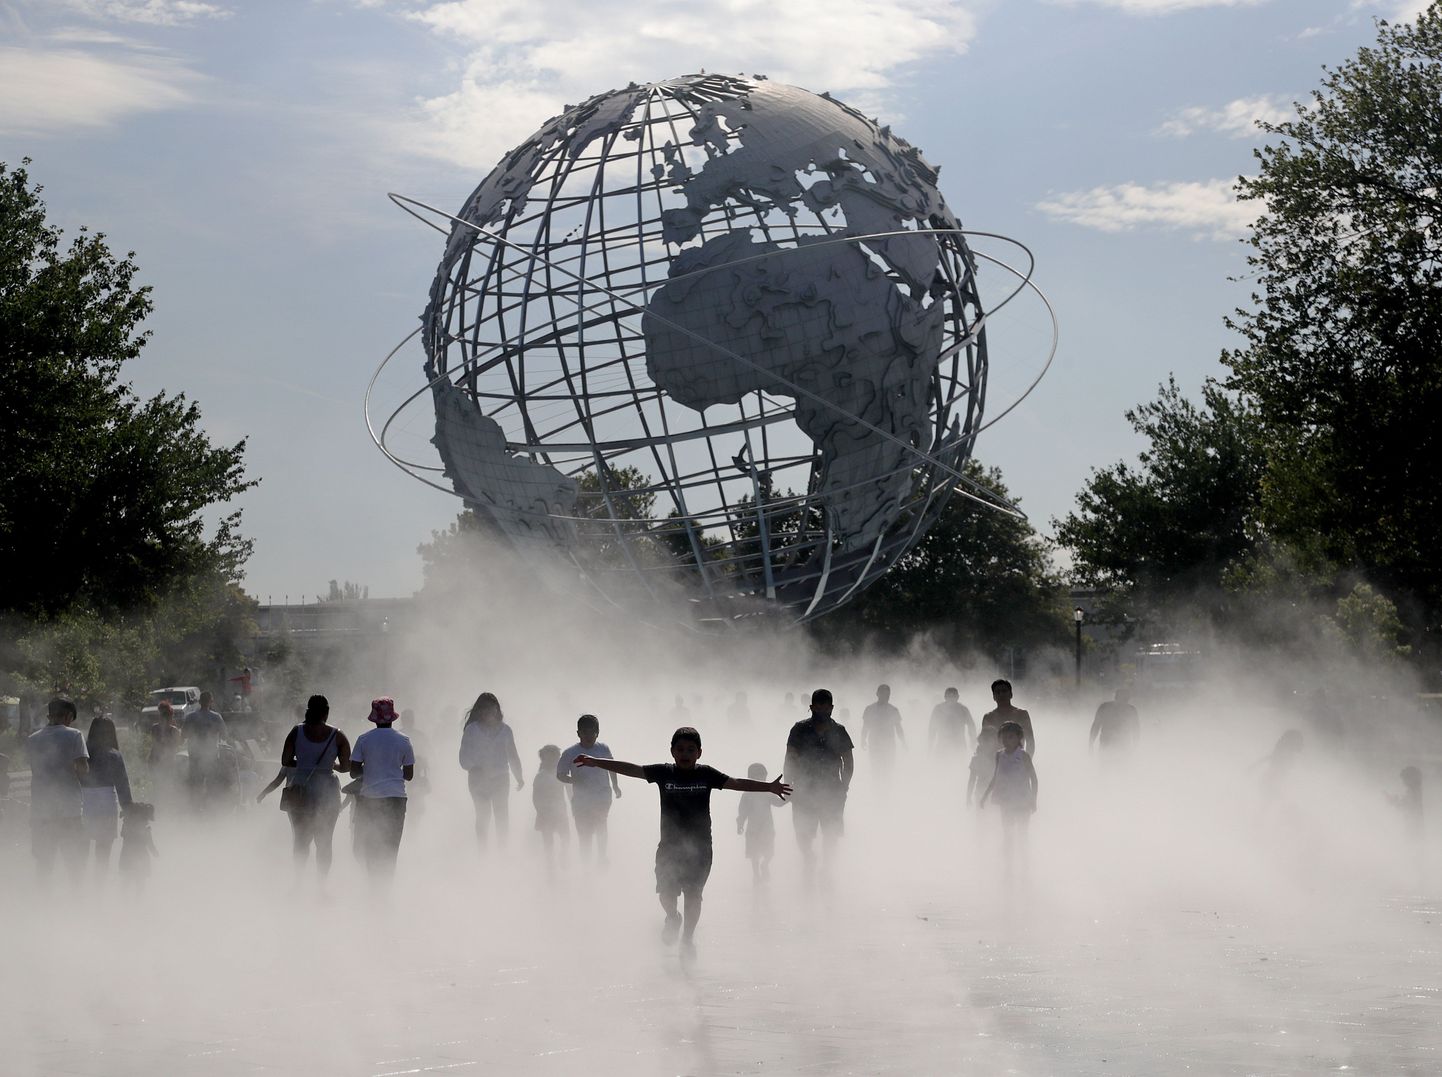 Inimesed jahutamas end New Yorgis Unisphere’i ees asuvas udupargis linna augustis 2021 tabanud kuumalaine ajal.